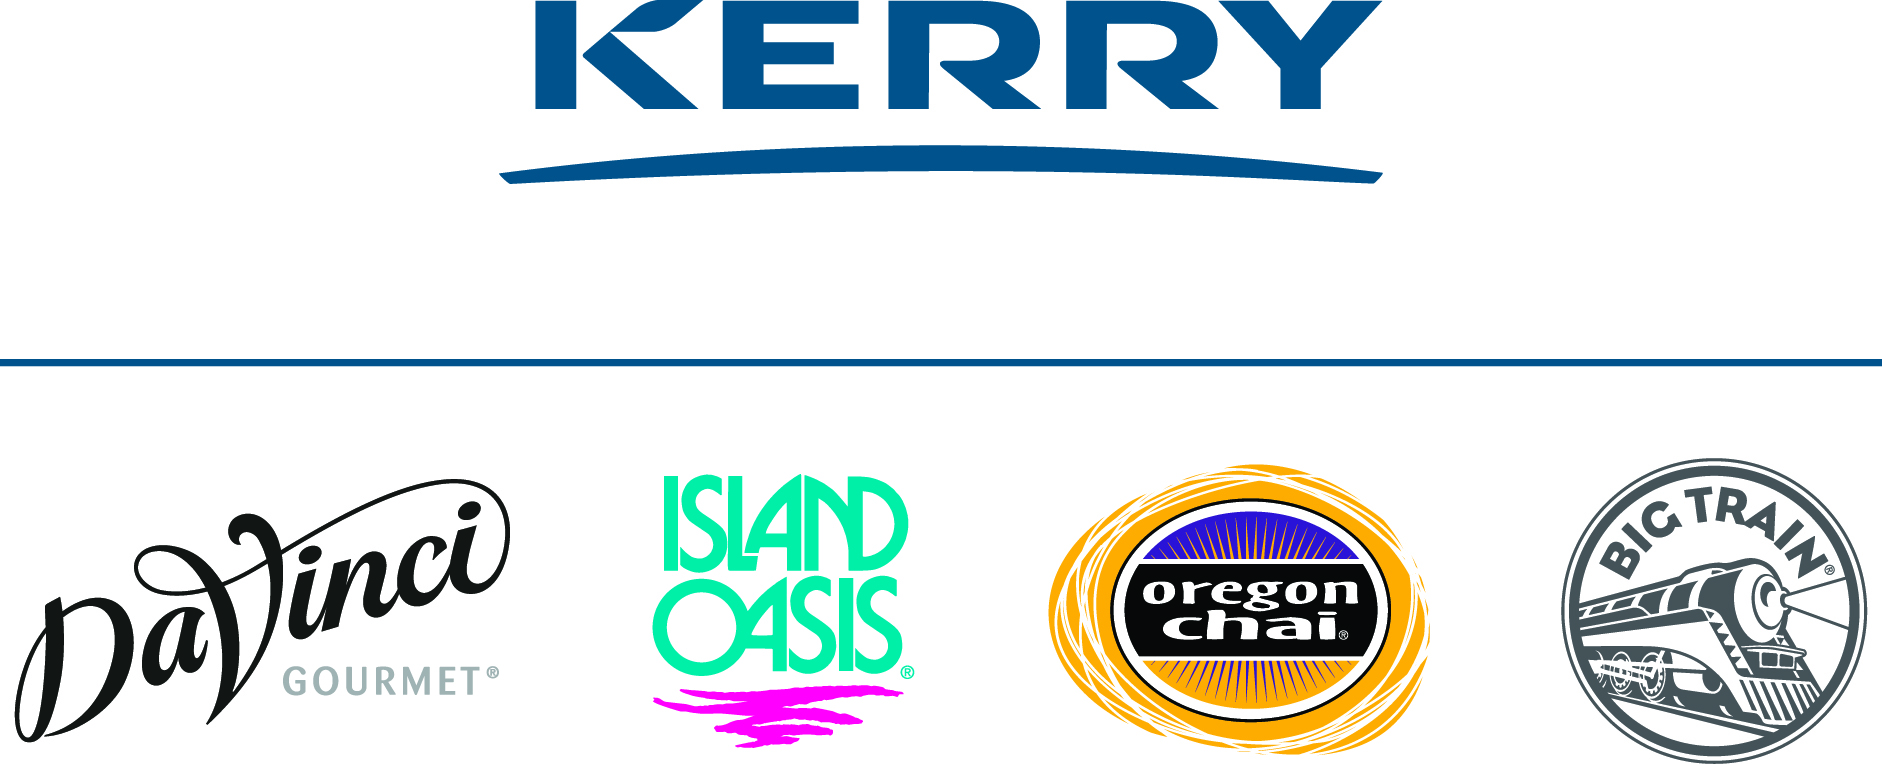 Kerry Logo.jpg